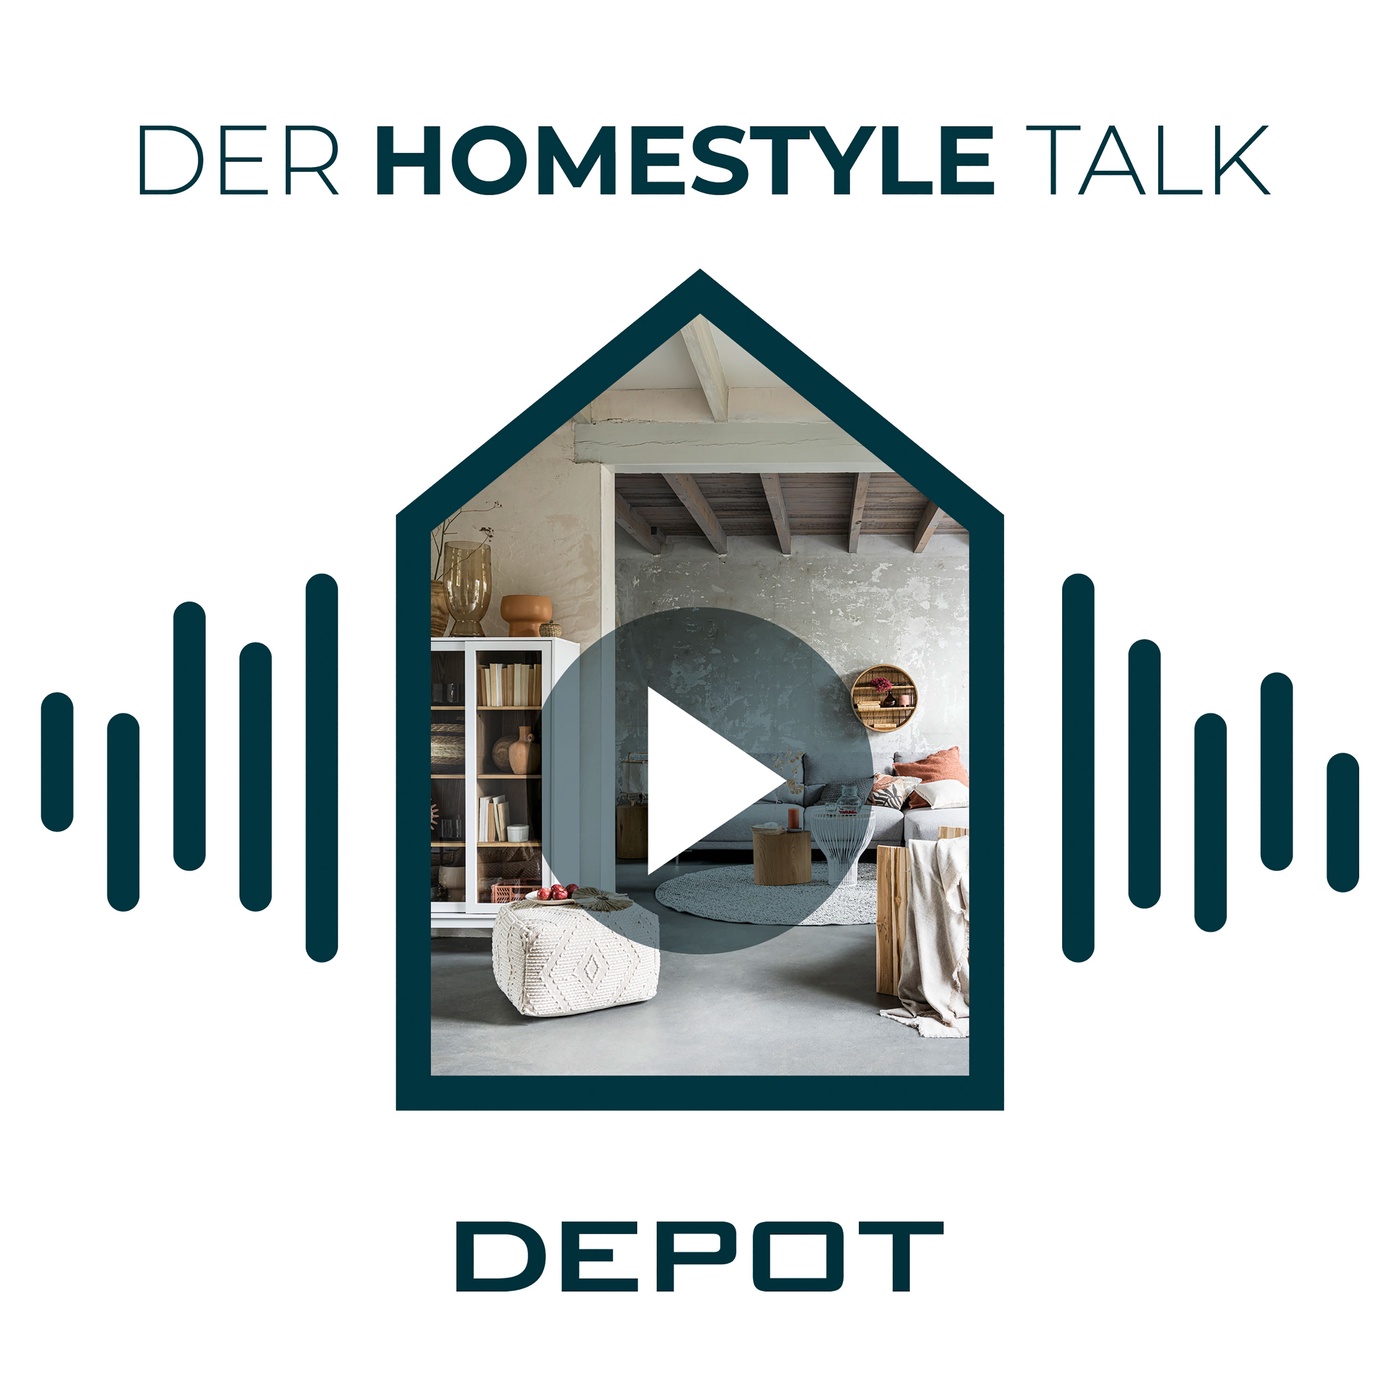 DEPOT - Der Homestyle Talk